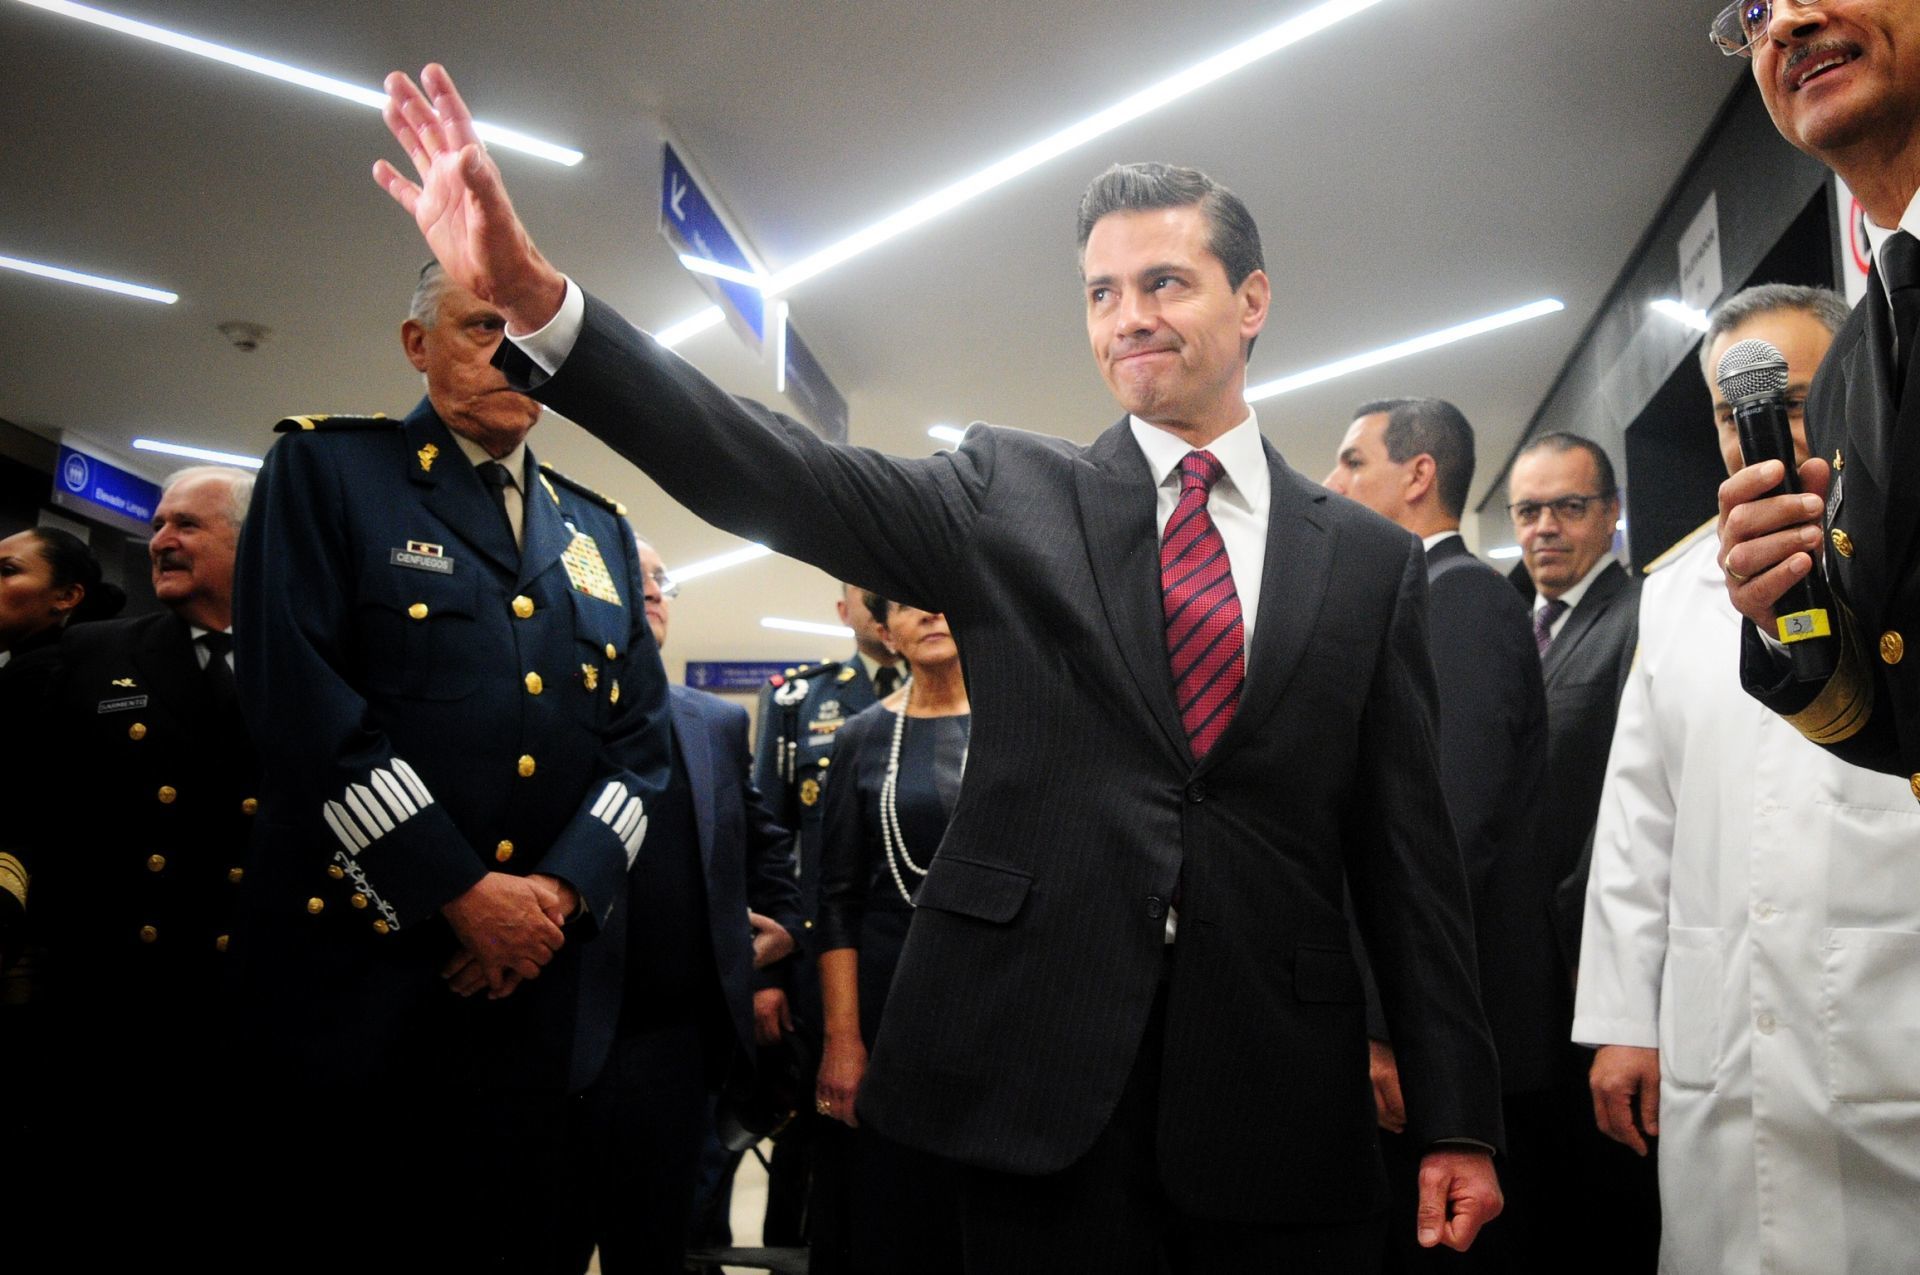 Supuesto integrante del Cártel de Sinaloa cenó con Peña Nieto